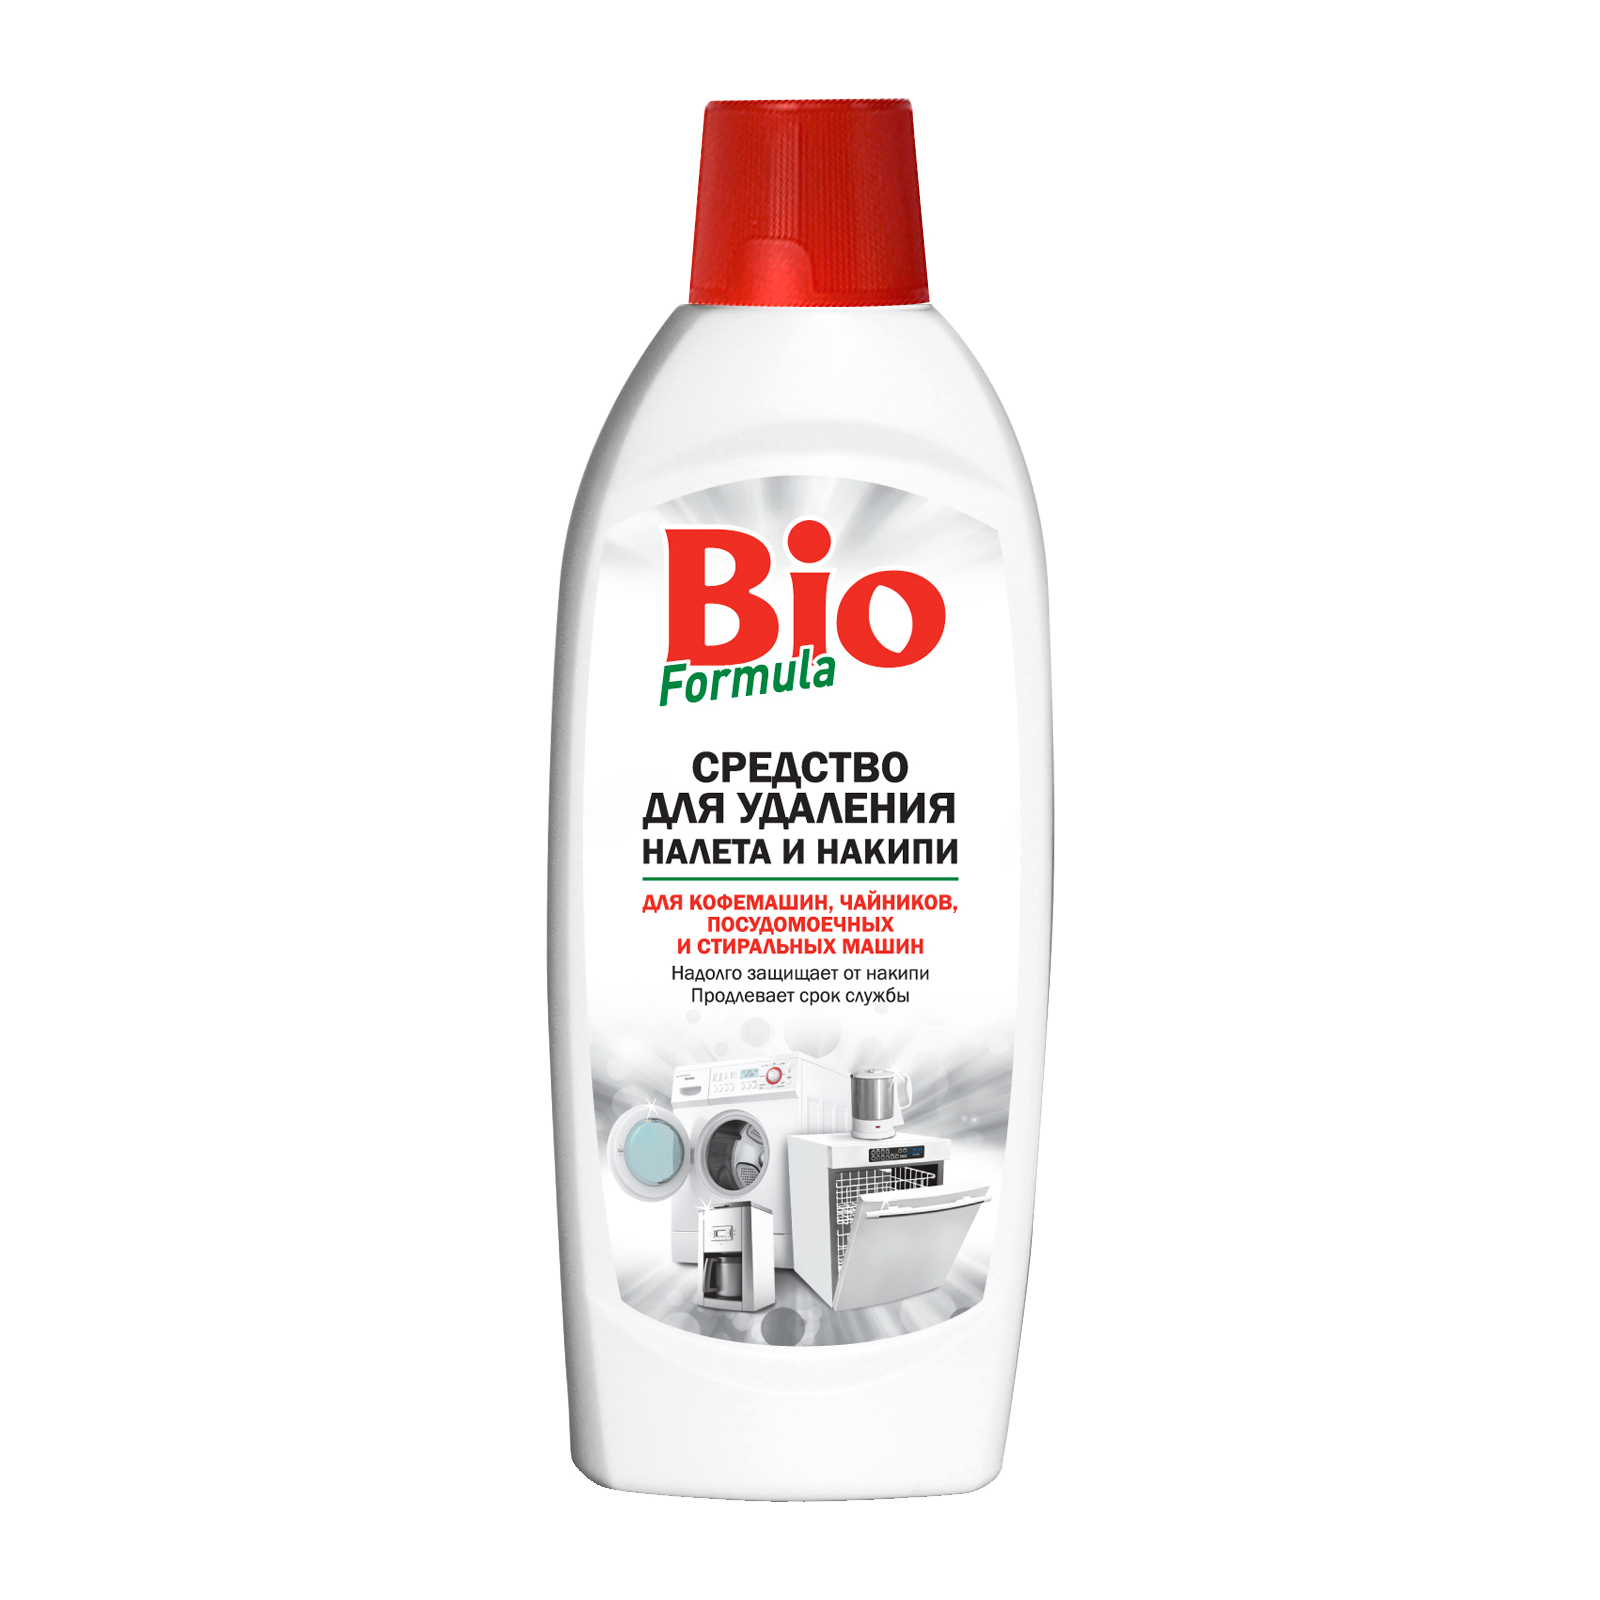 Жидкость для чистки кухни Bio Formula для удаления налета и накипи 500 мл (4820168432125)